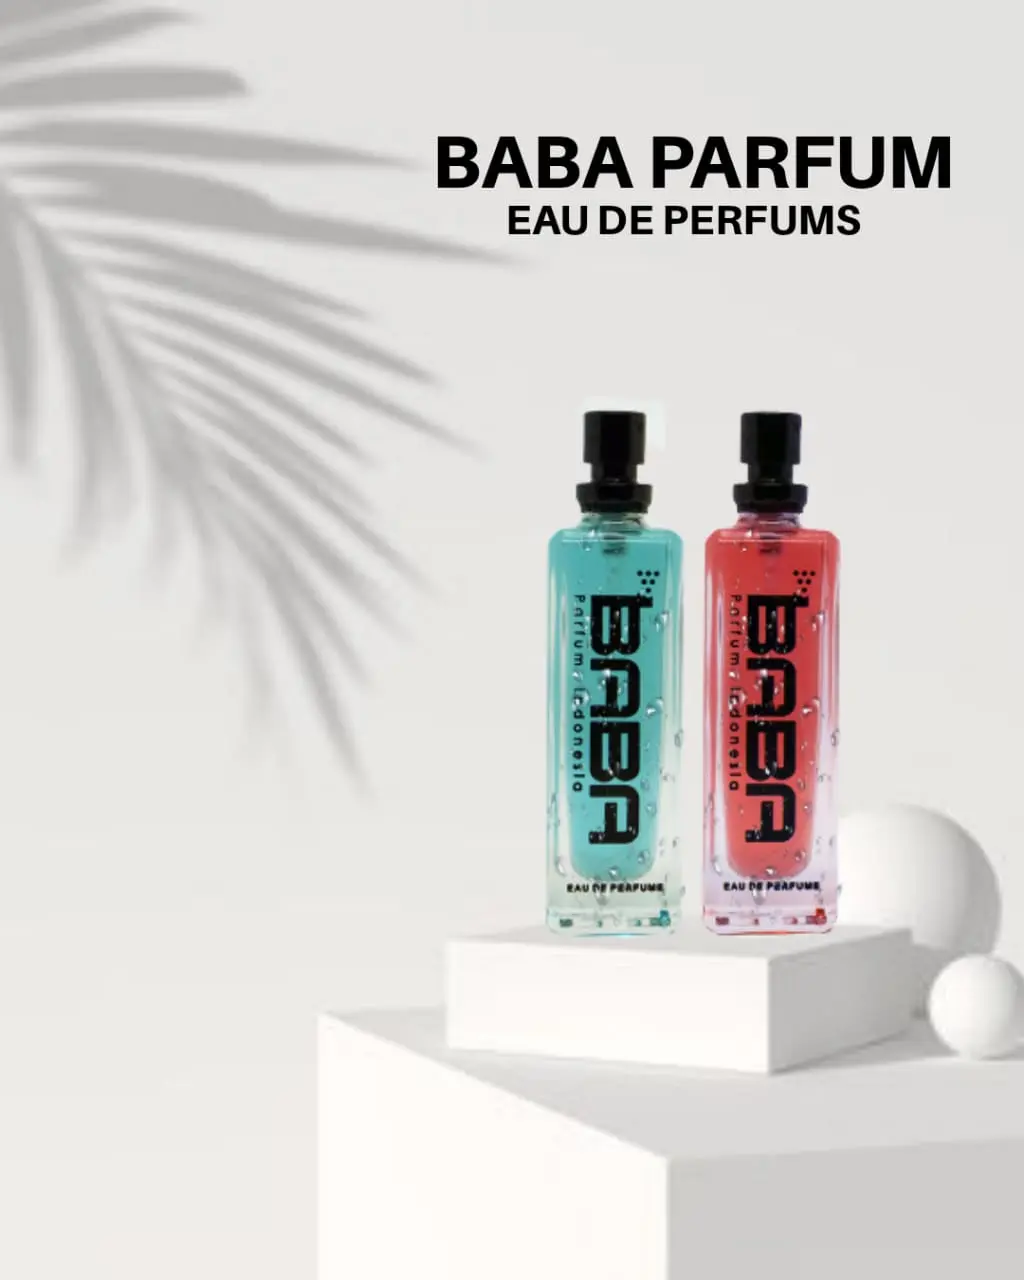 Agen Baba Parfum Premium Anti Alkohol Berkualitas  Di ngawi